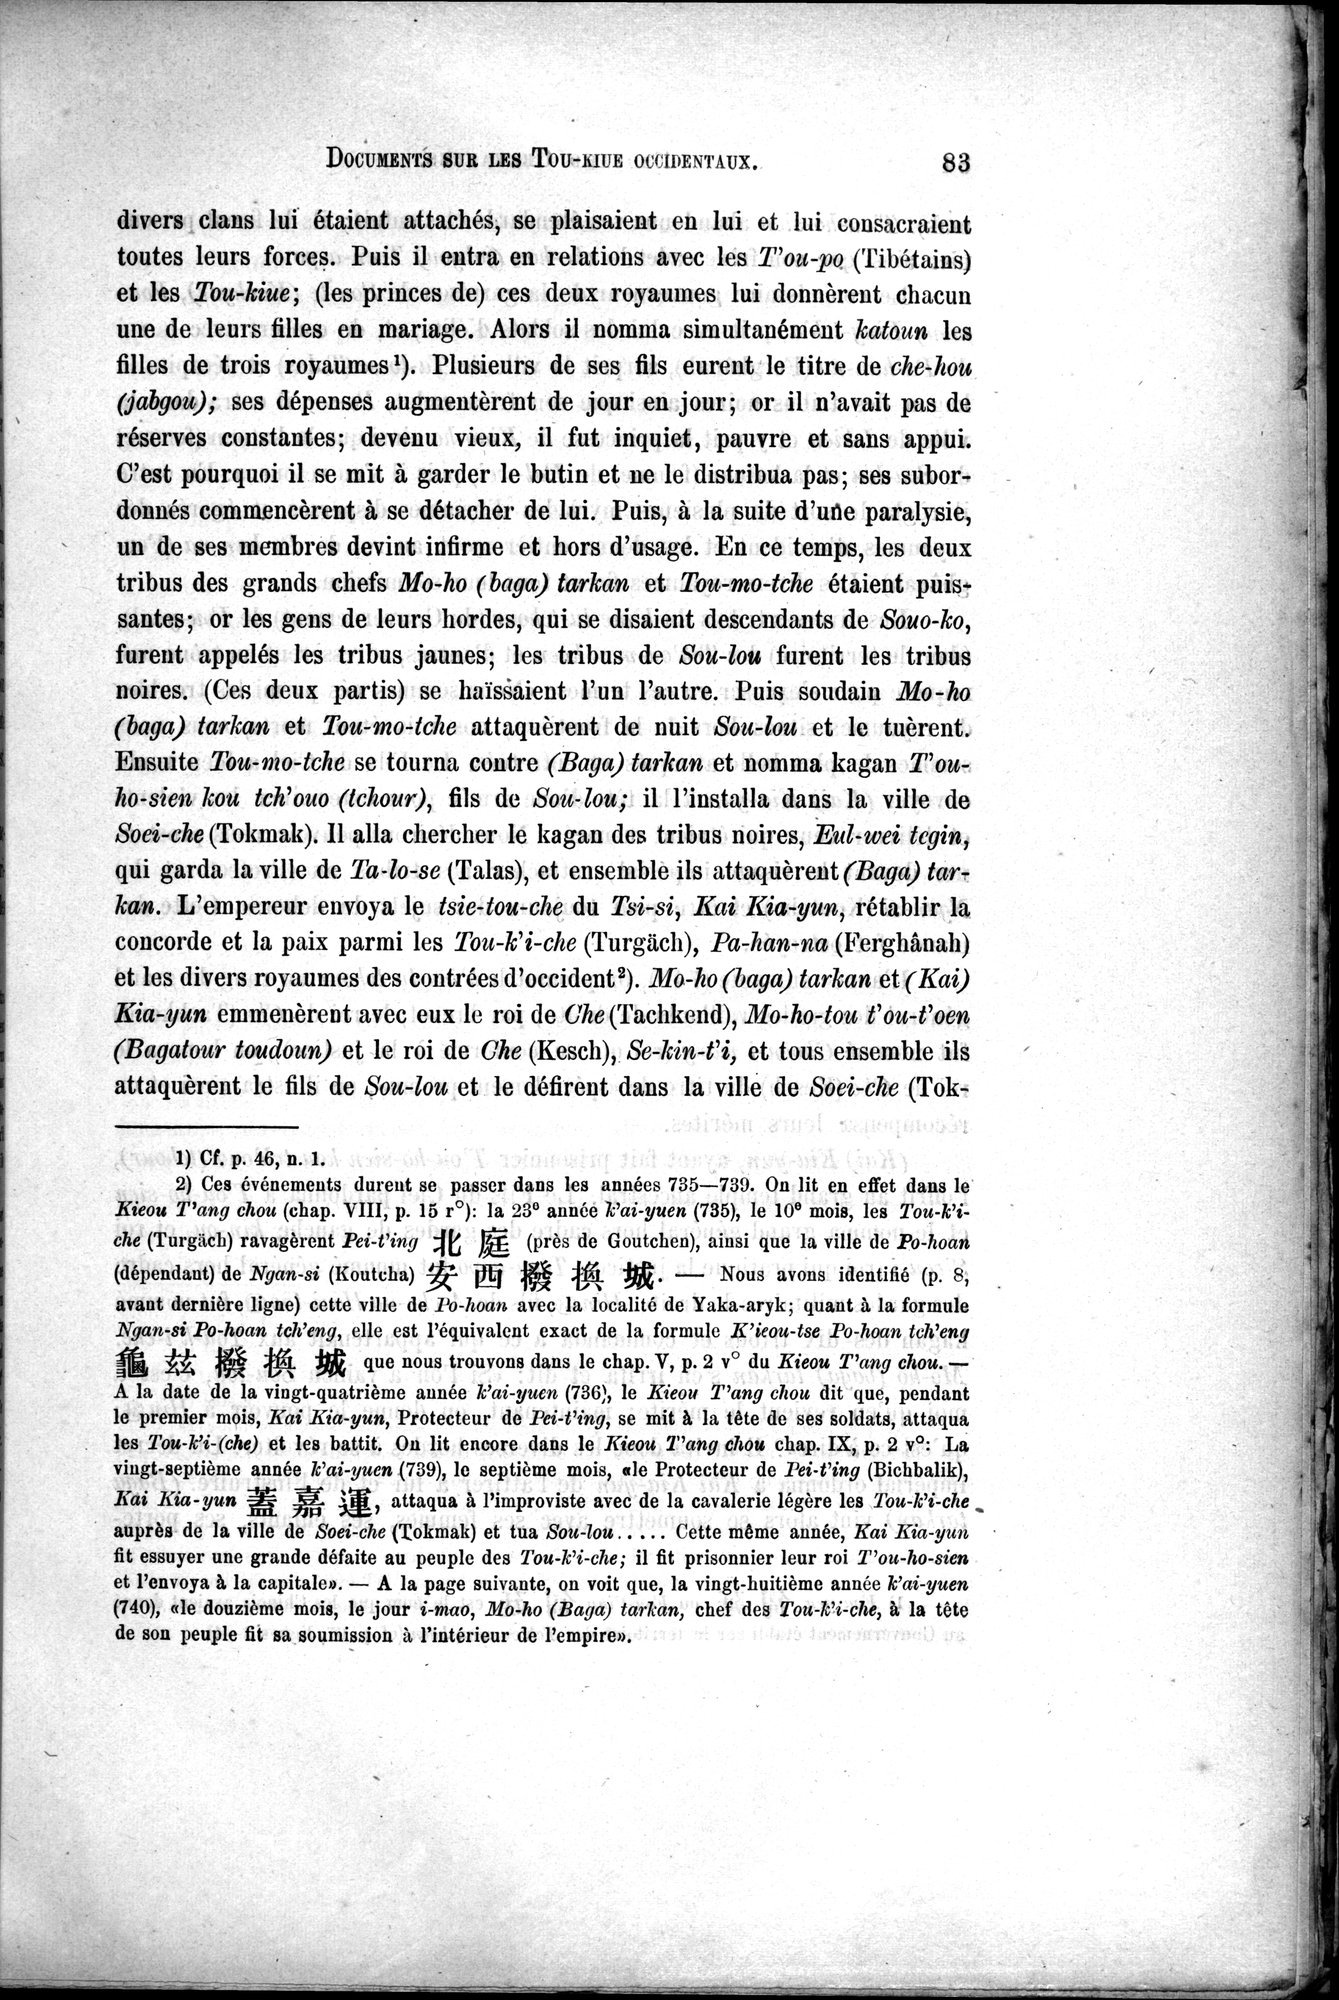 Documents sur les Tou-kiue (Turcs) occidentaux : vol.1 / Page 93 (Grayscale High Resolution Image)